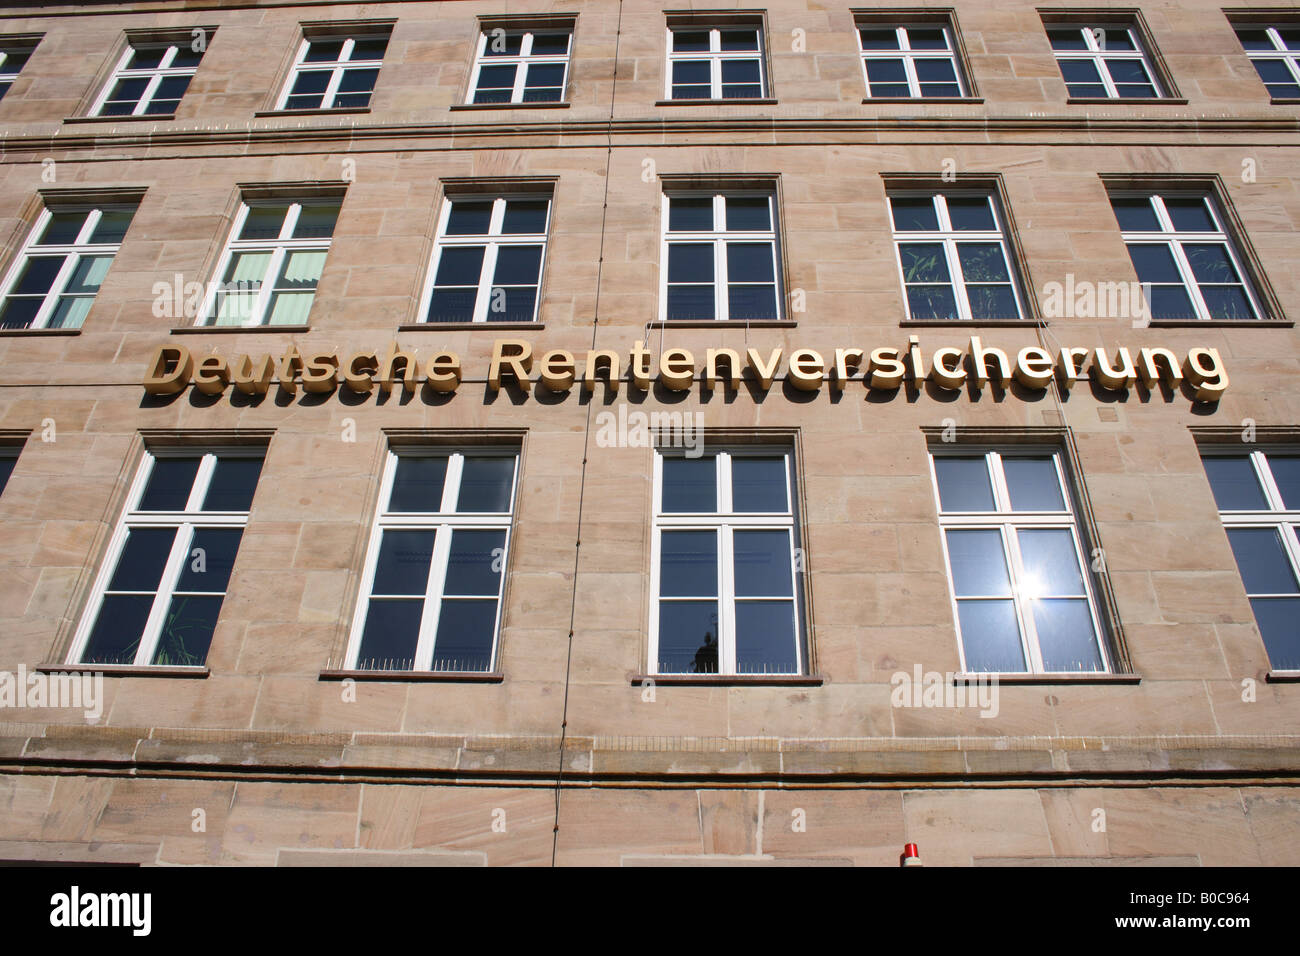 building of Deutsche Rentenversicherung in the city of Nuremberg, Bavaria, Germany, Europe. Photo by Willy Matheisl Stock Photo